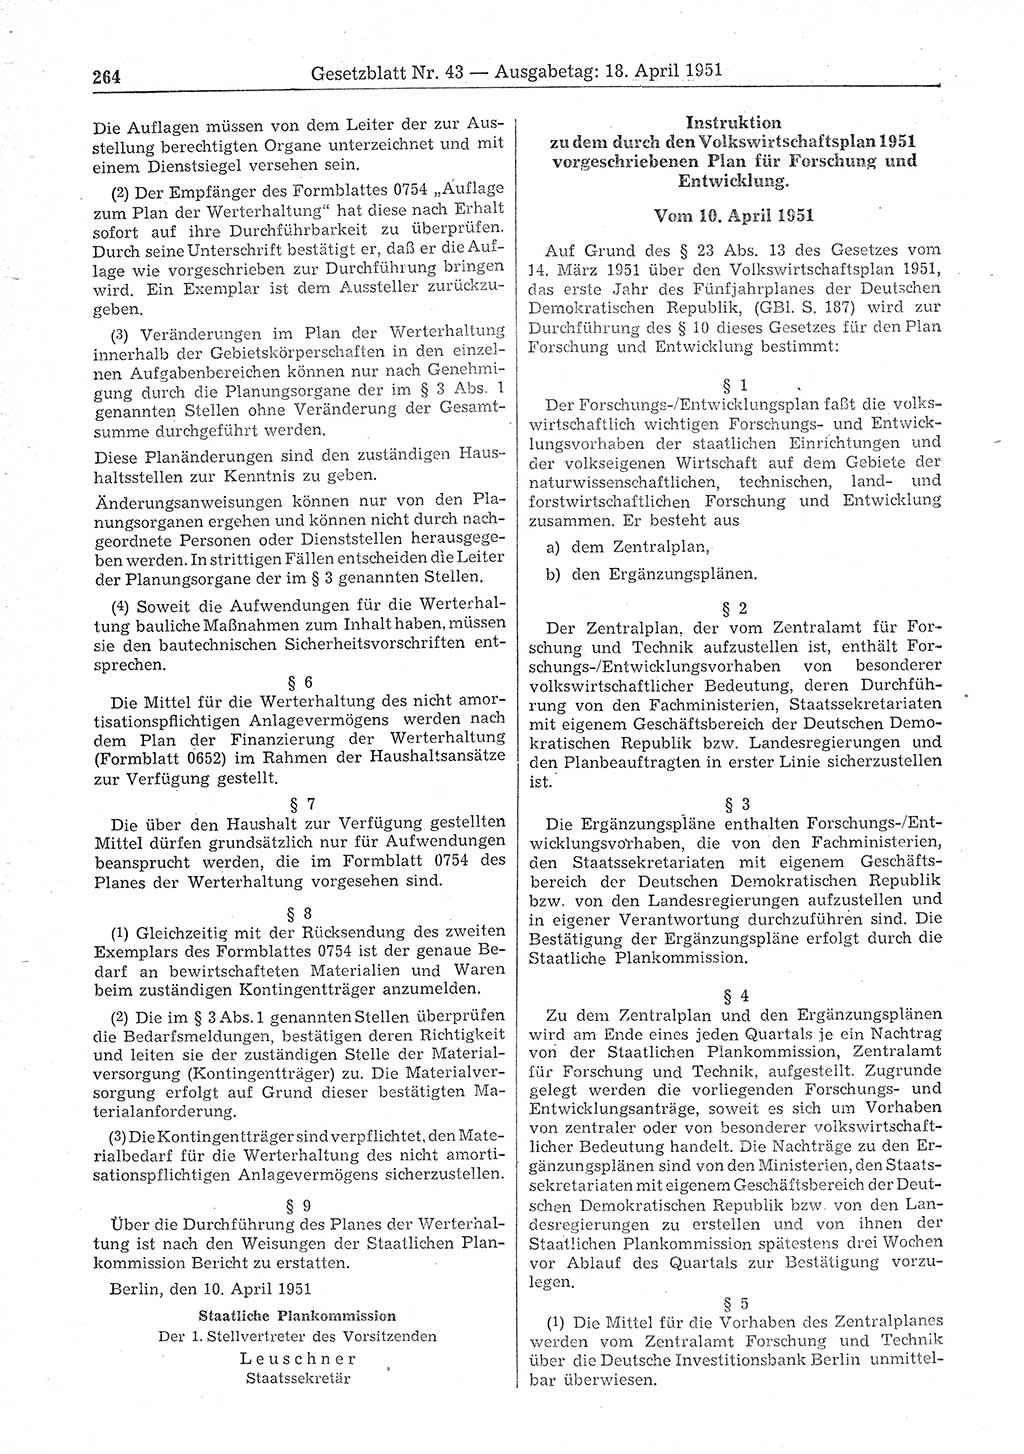 Gesetzblatt (GBl.) der Deutschen Demokratischen Republik (DDR) 1951, Seite 264 (GBl. DDR 1951, S. 264)